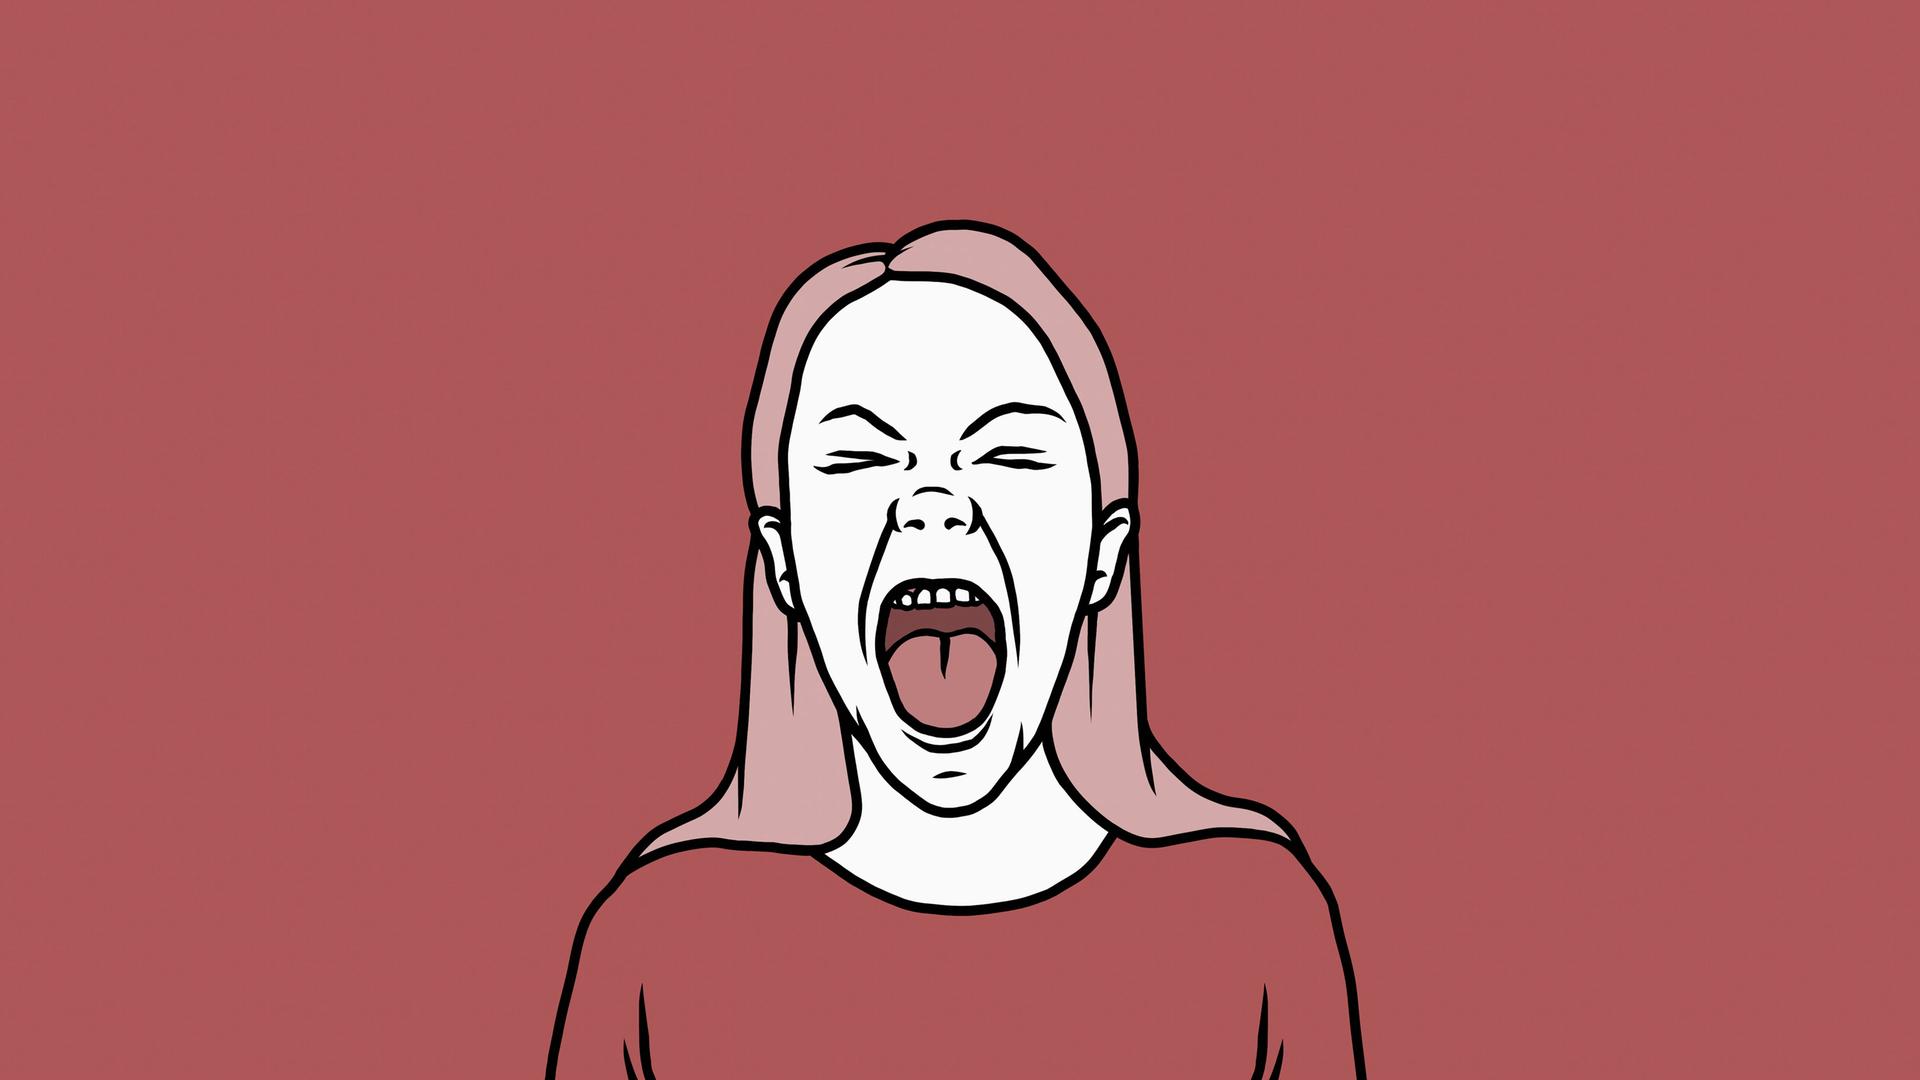 Illustration einer schreienden Person vor rotem Hintergrund.